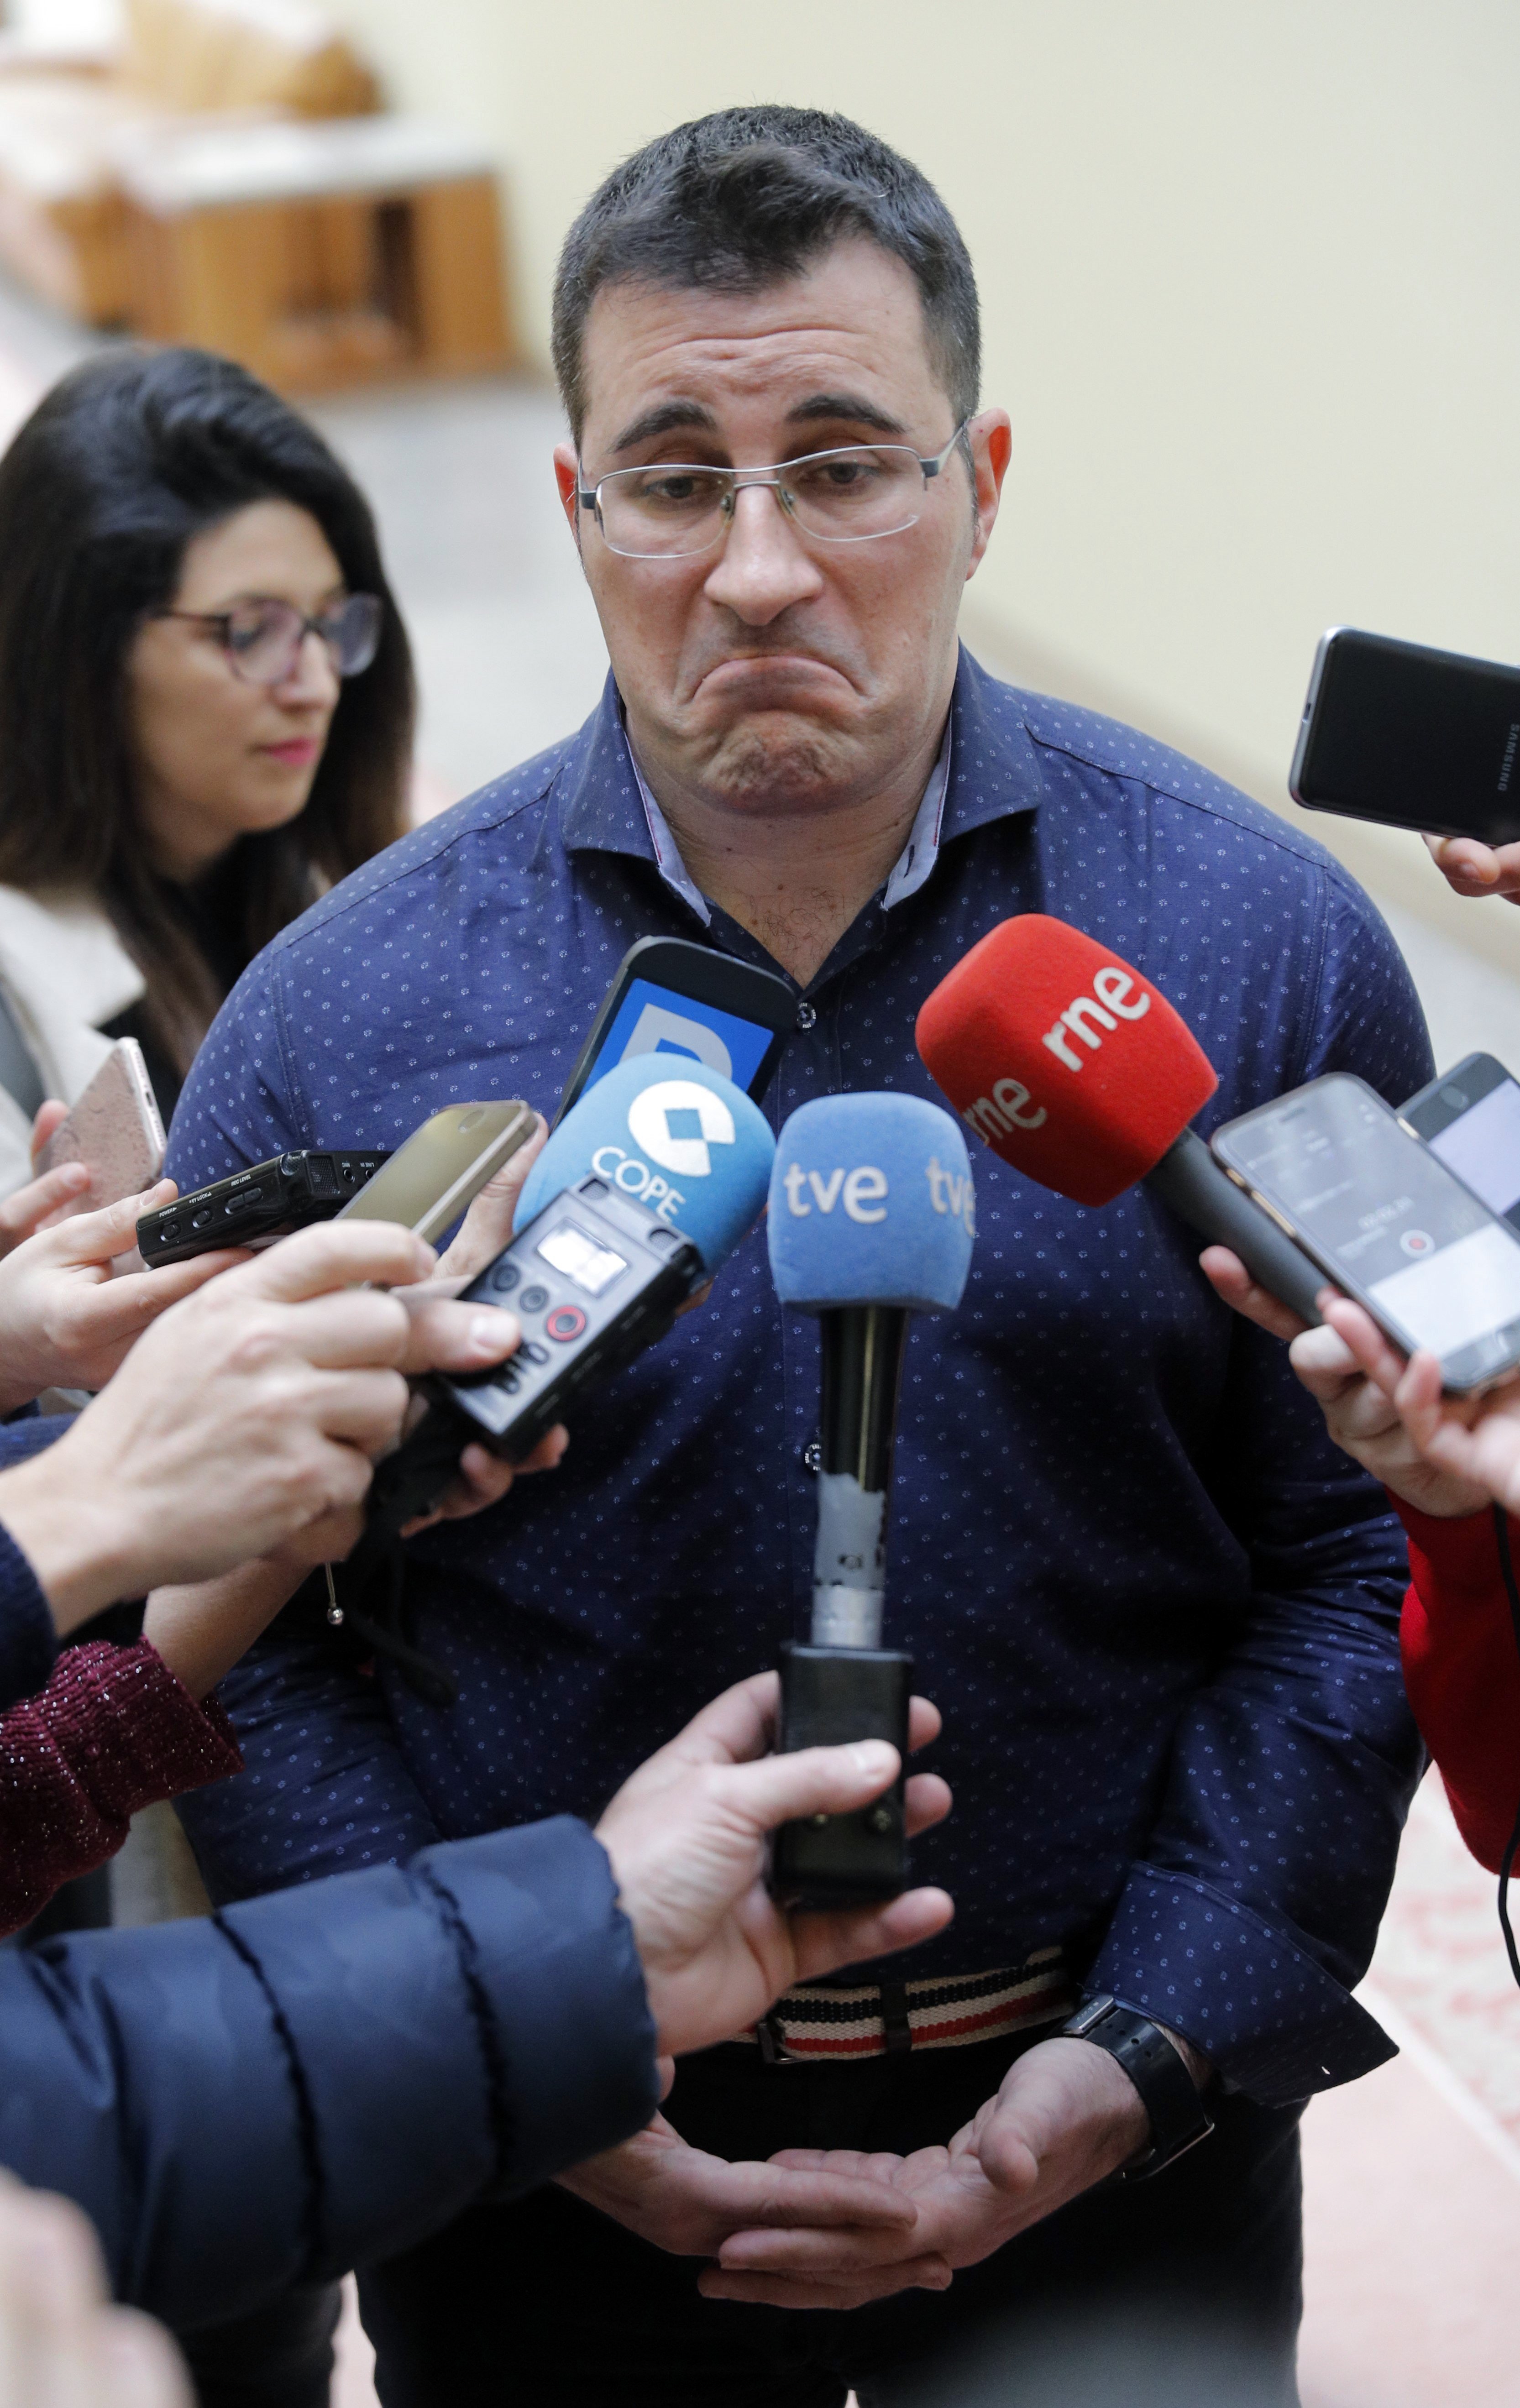 Dimite un diputado gallego de Podemos por hinchar su currículum